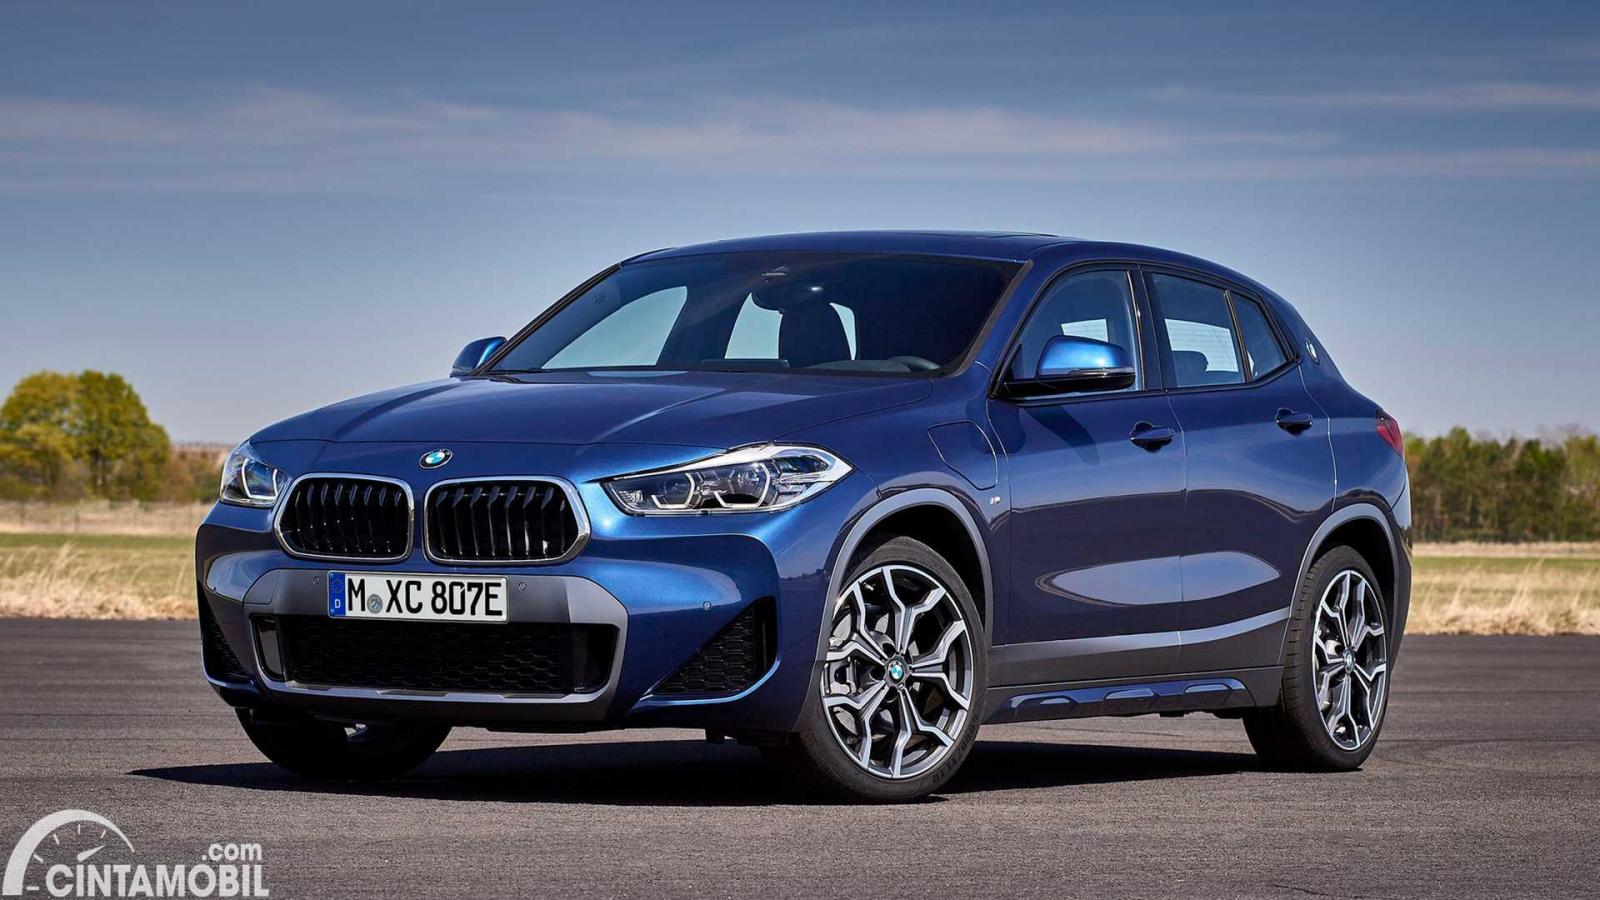 Gambar menunjukkan sebuah mobil BMW X2 berwarna biru dilihat dari sisi depan